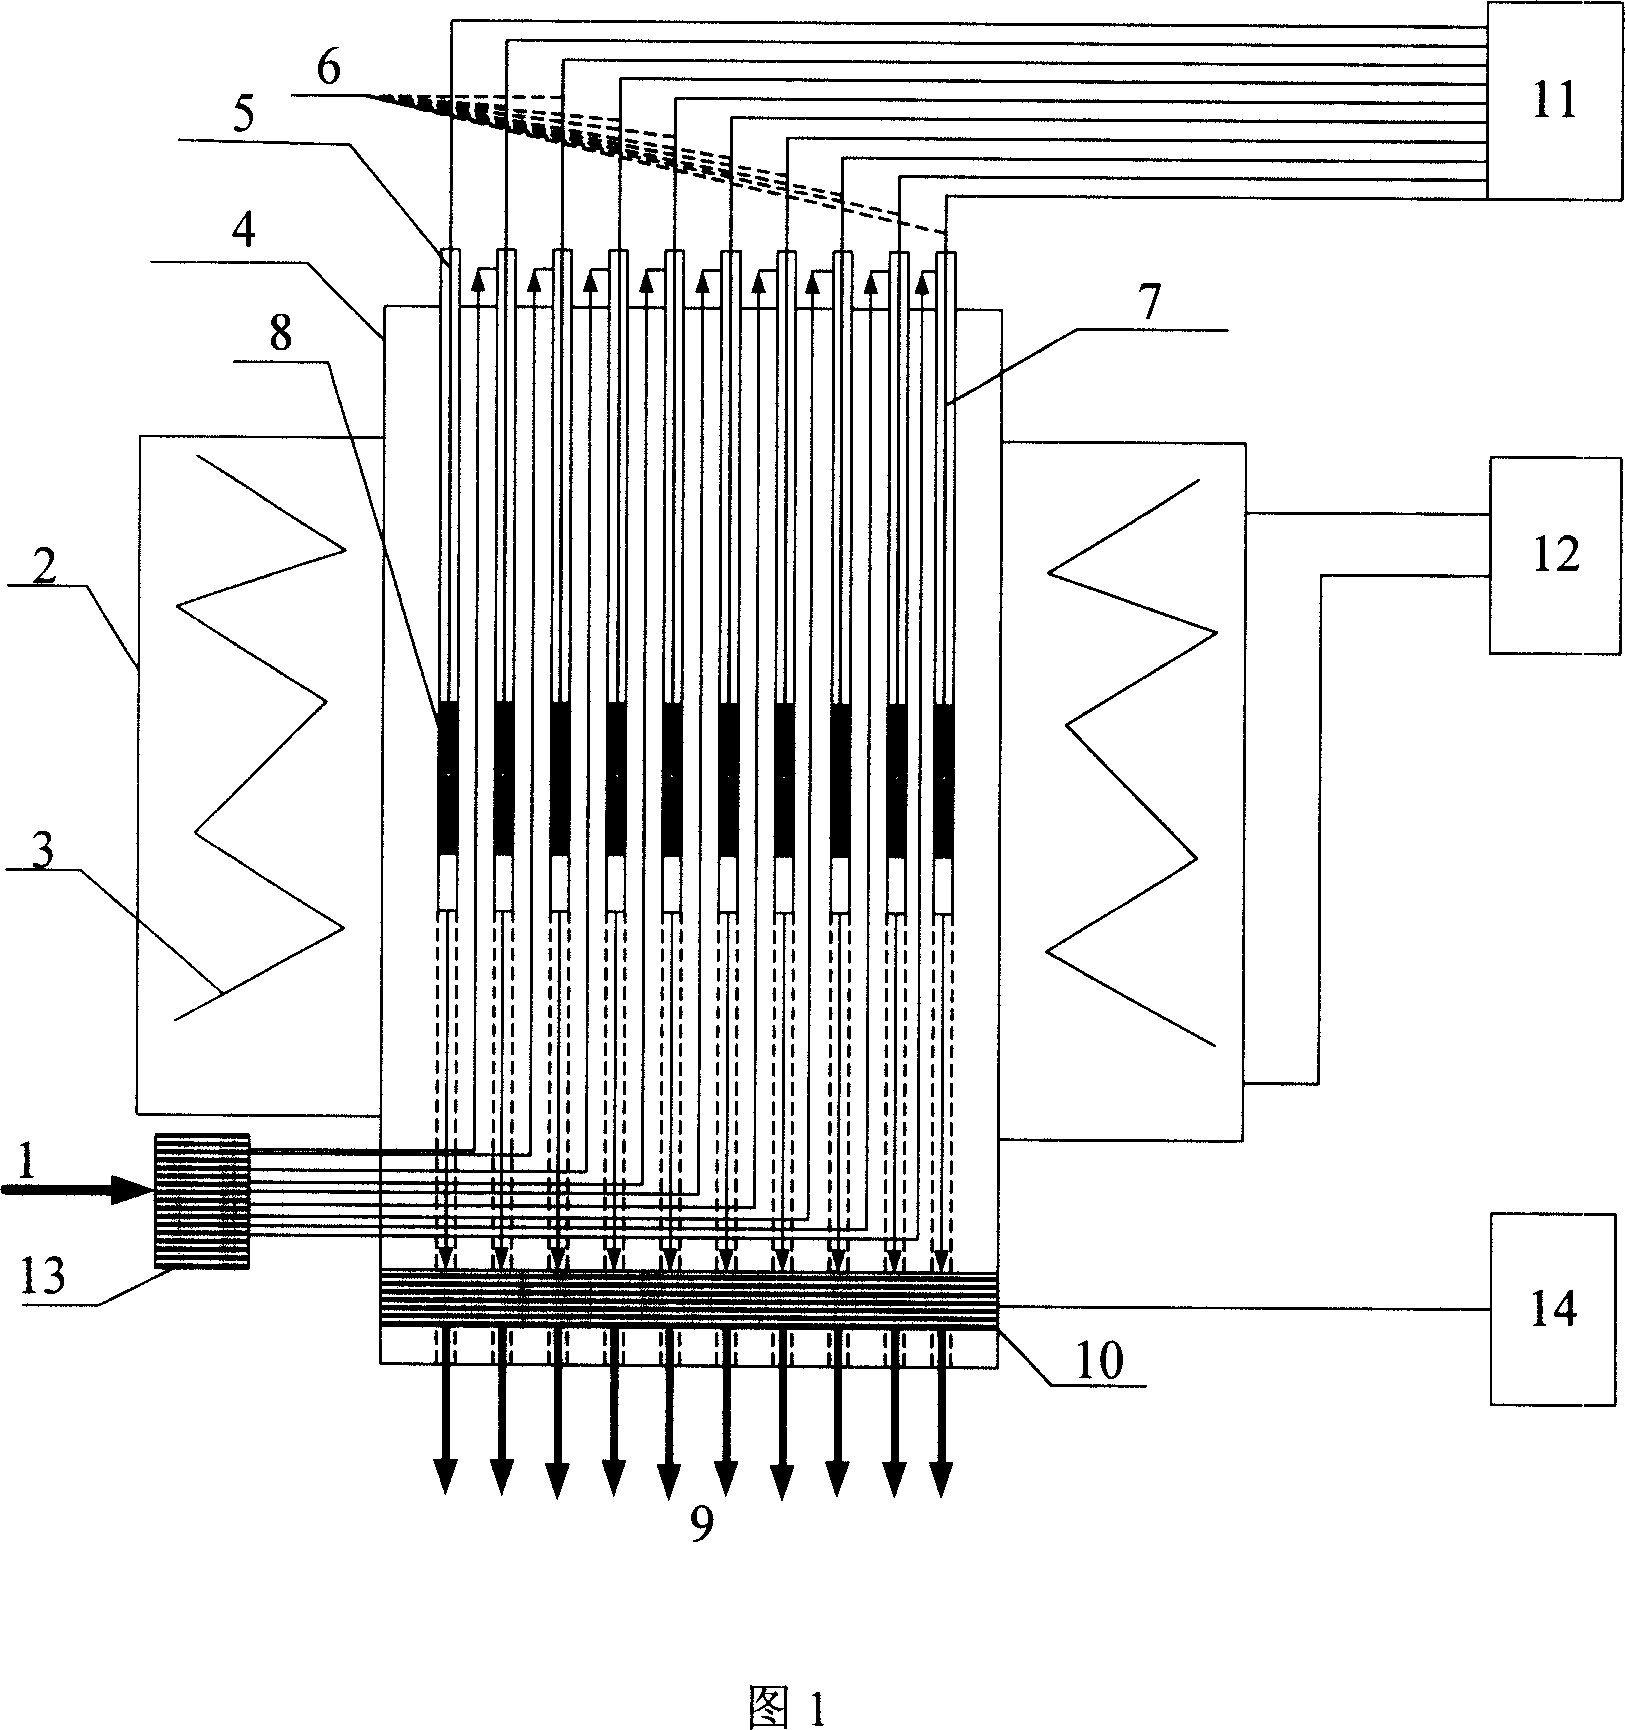 Multi-pipe composite reacting apparatus